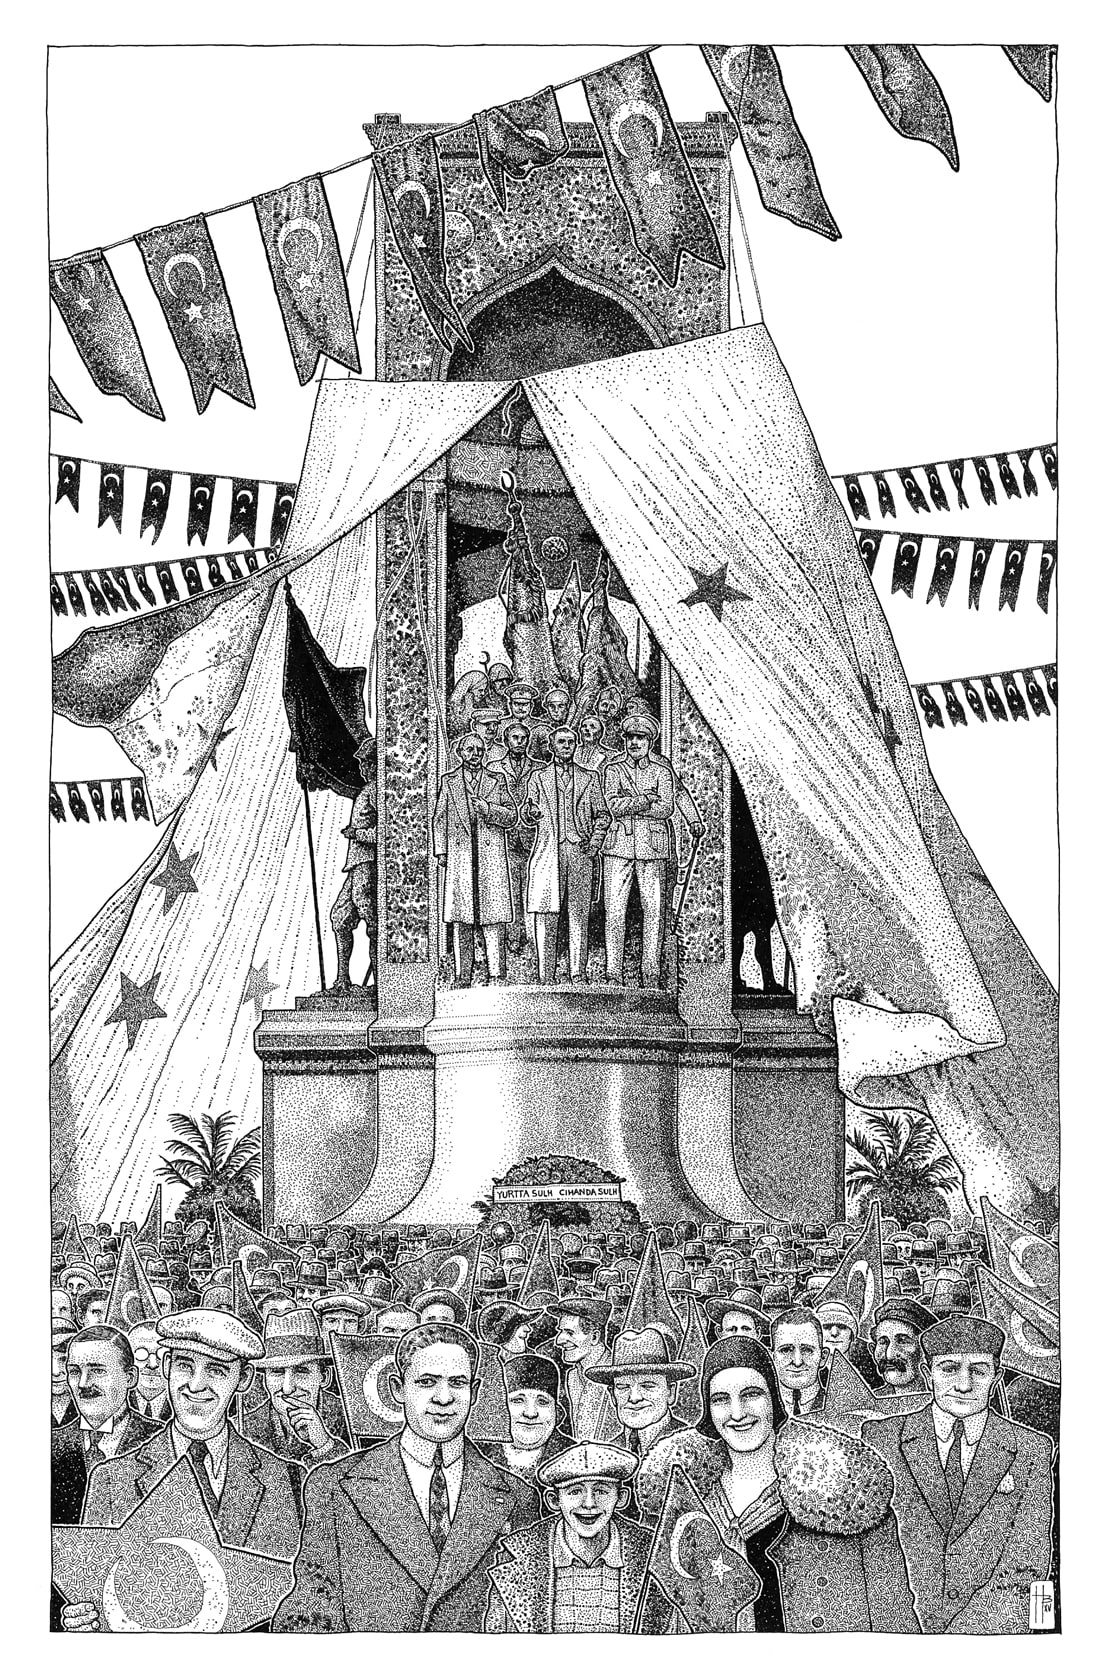 1928 yılında Cumhuriyet Anıtı'nın a&amp;amp;amp;amp;amp;amp;ccedil;ılışı - Beno&amp;amp;amp;amp;amp;amp;icirc;t Hamet
